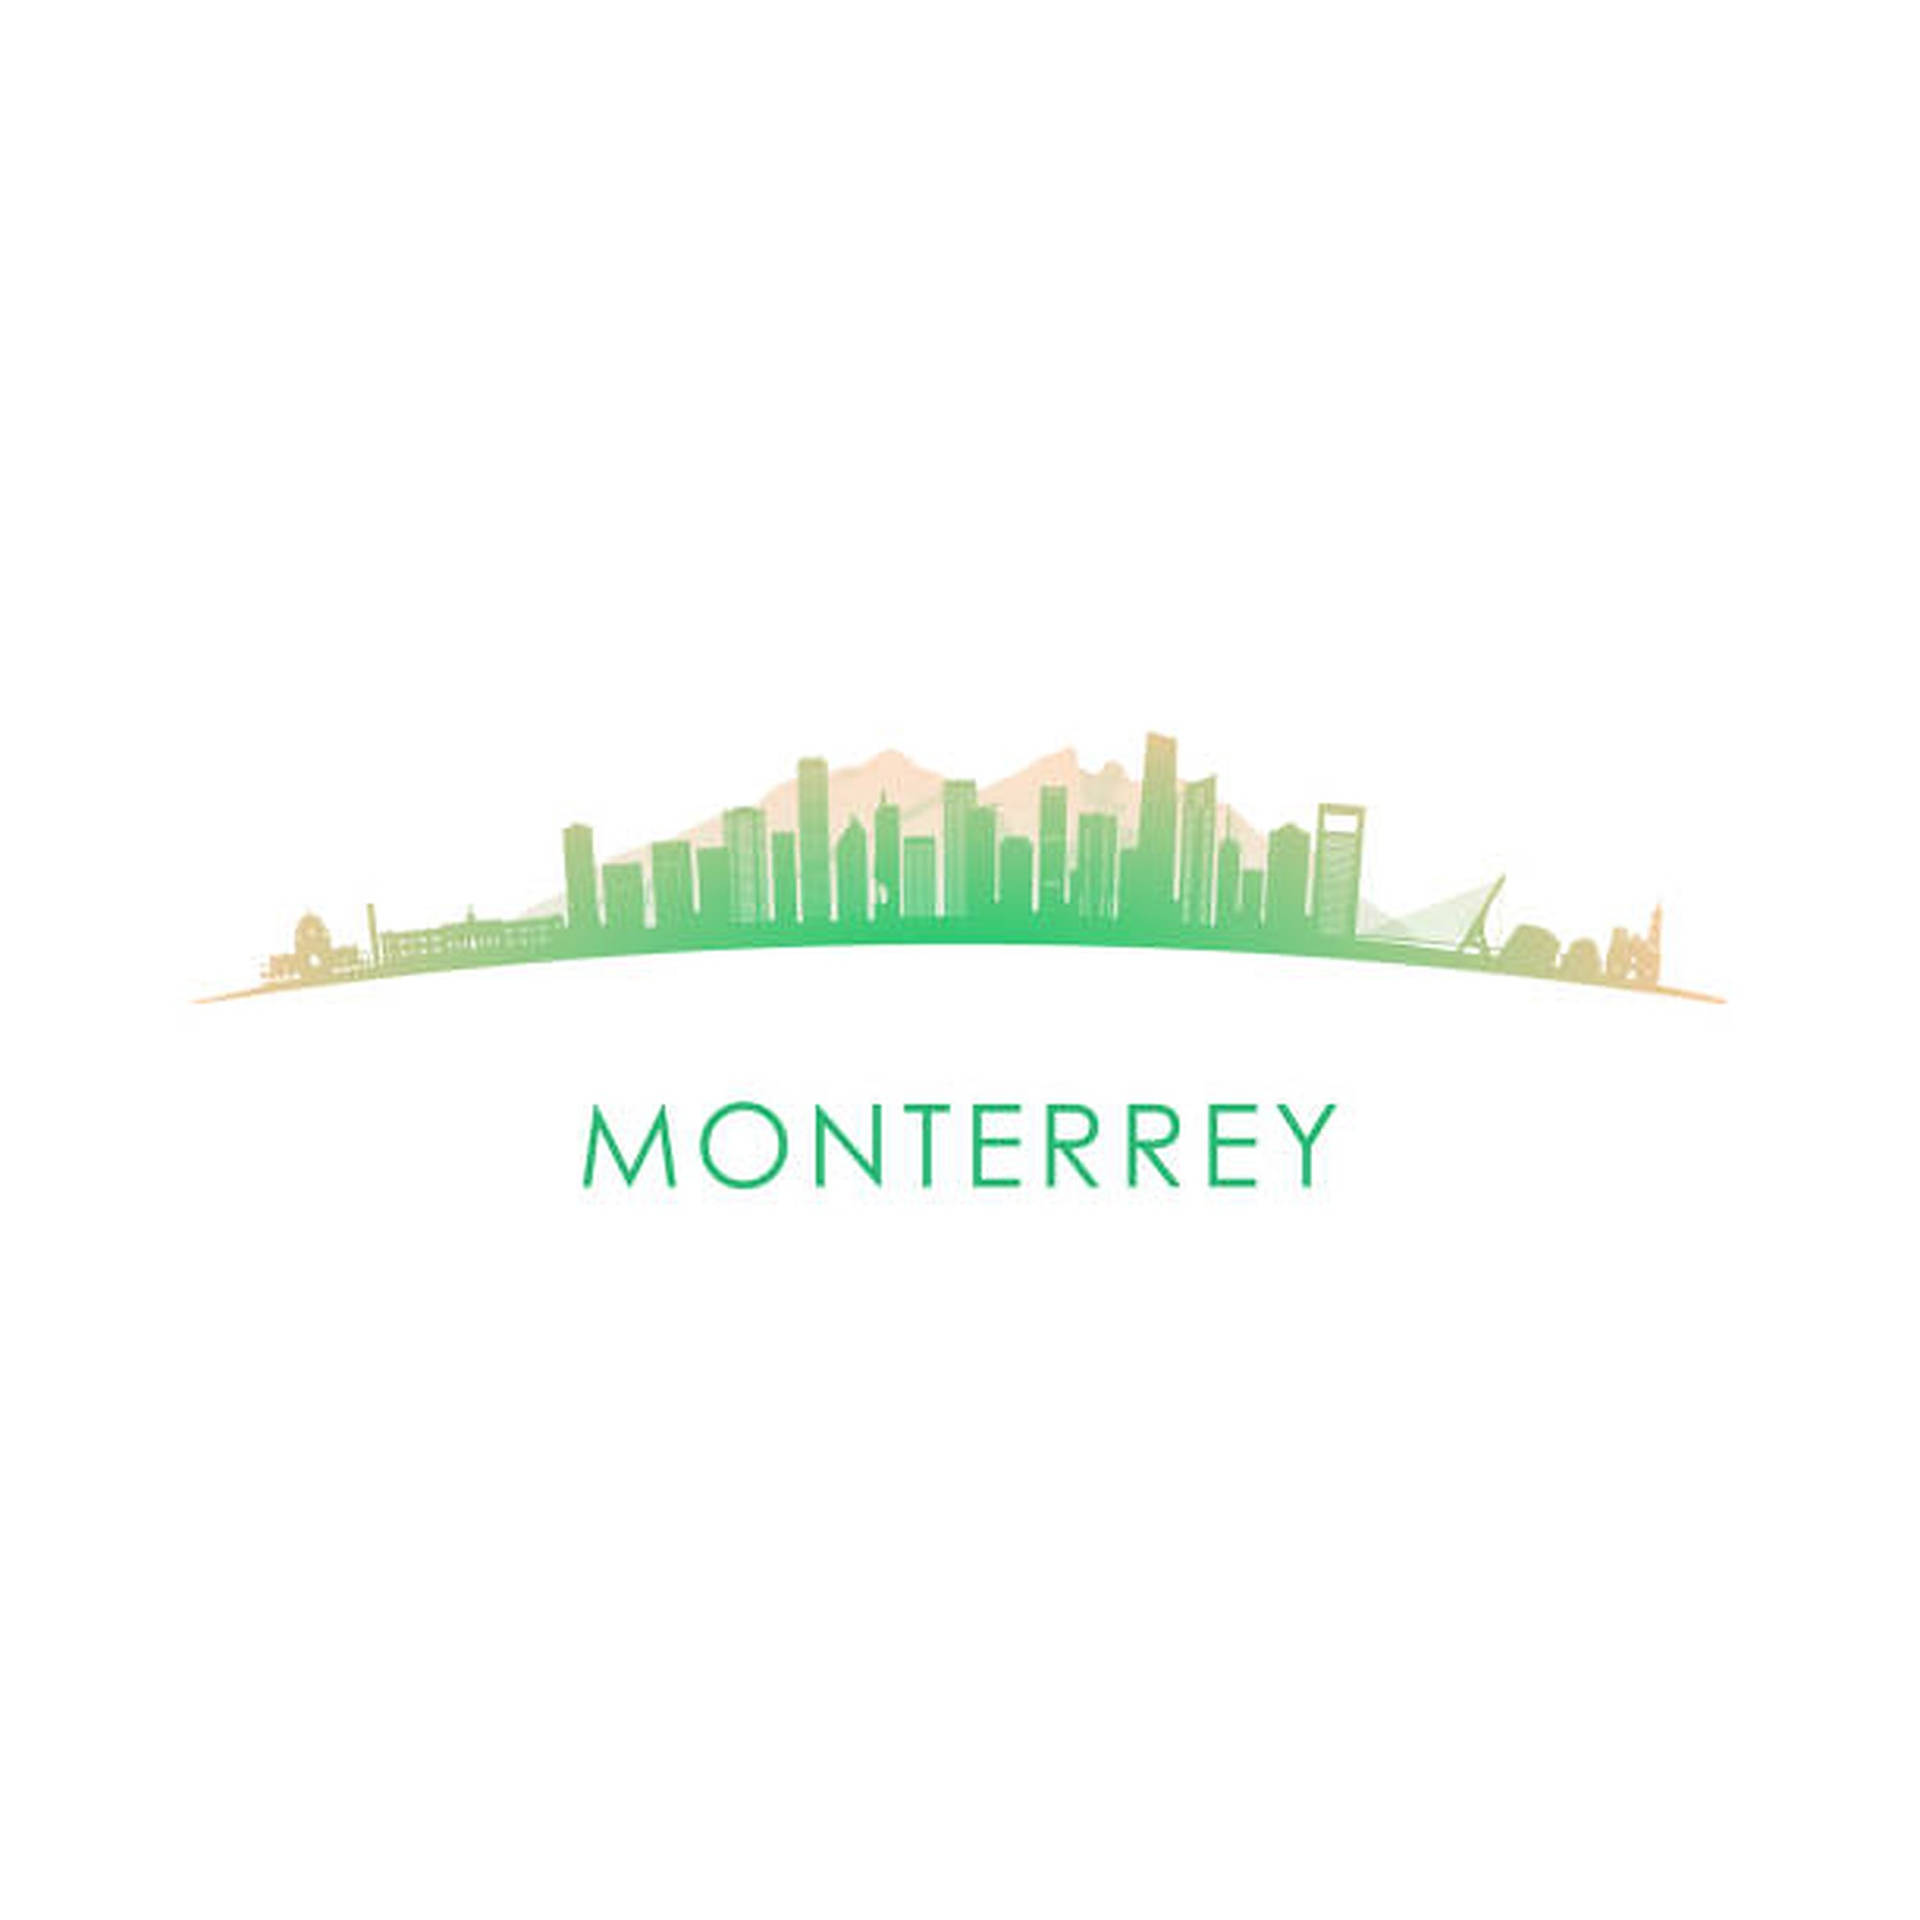 Monterrey Digitale Værk: Et mønster af kvarterer og kløfter skabt af farverig digital kunst. Wallpaper